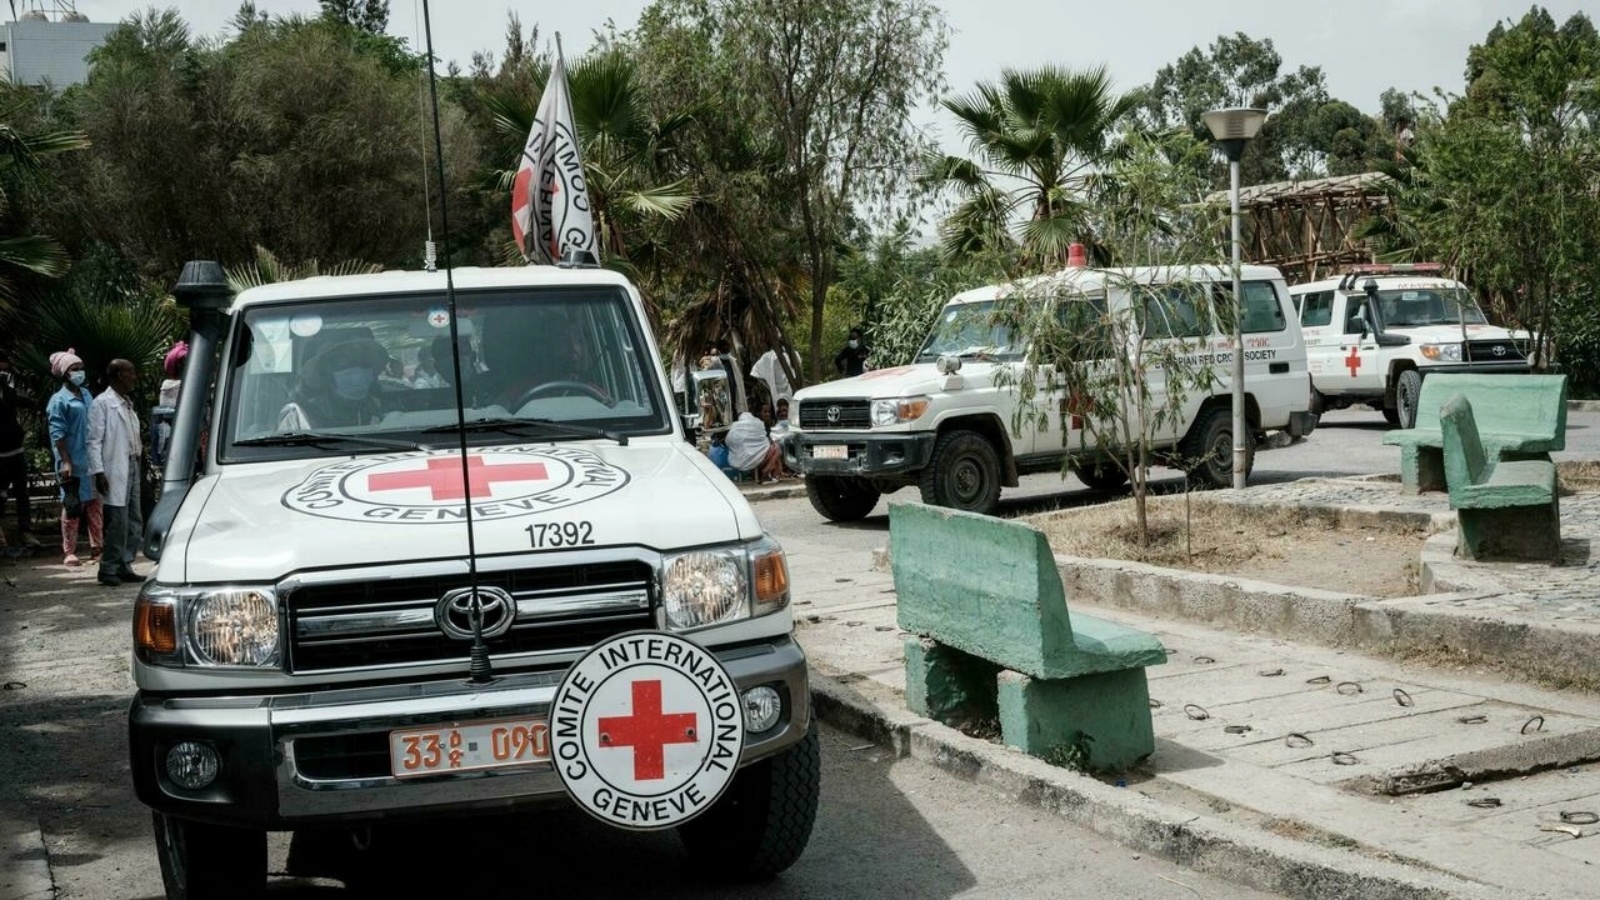 سيارات إسعاف تابعة للجنة الدولية للصليب الأحمر في 24 يونيو 2021 في مستشفى ميكيلي الرئيسي عاصمة منطقة تيغراي في اثيوبيا 